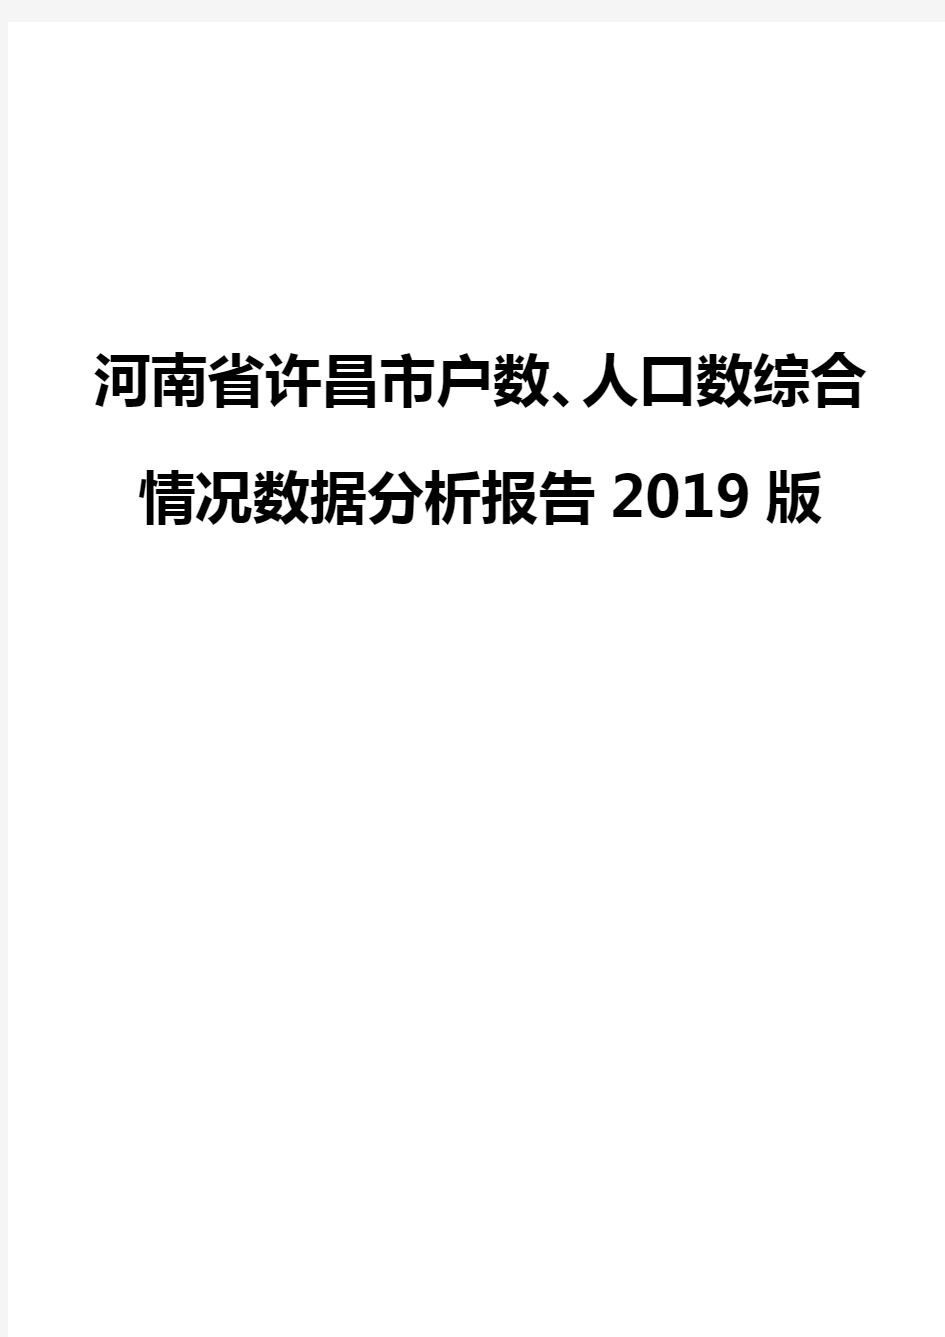 河南省许昌市户数、人口数综合情况数据分析报告2019版